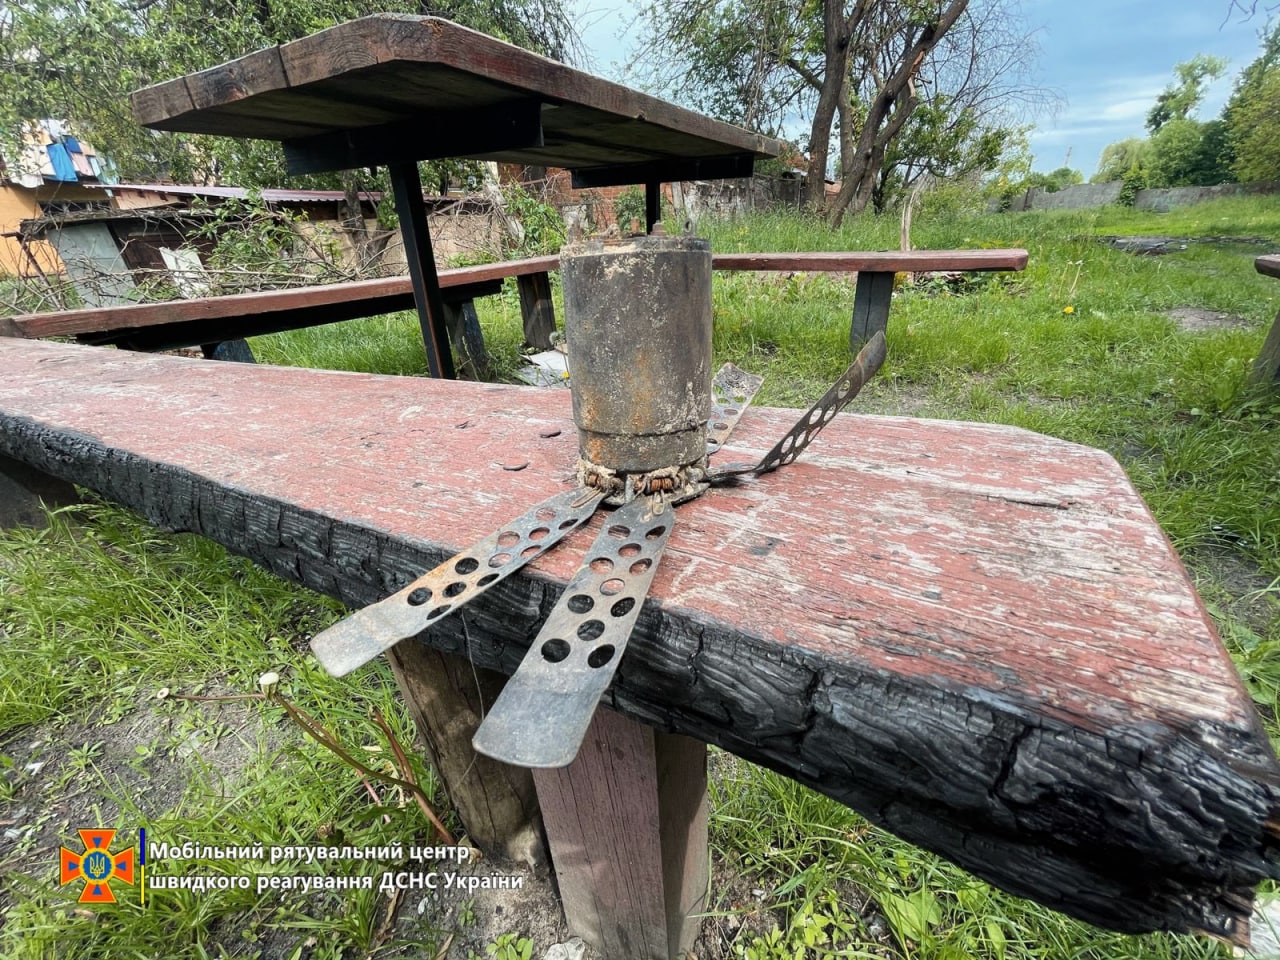 One of such POM-2 mines was found in a children's playground during demining works in Ukraine